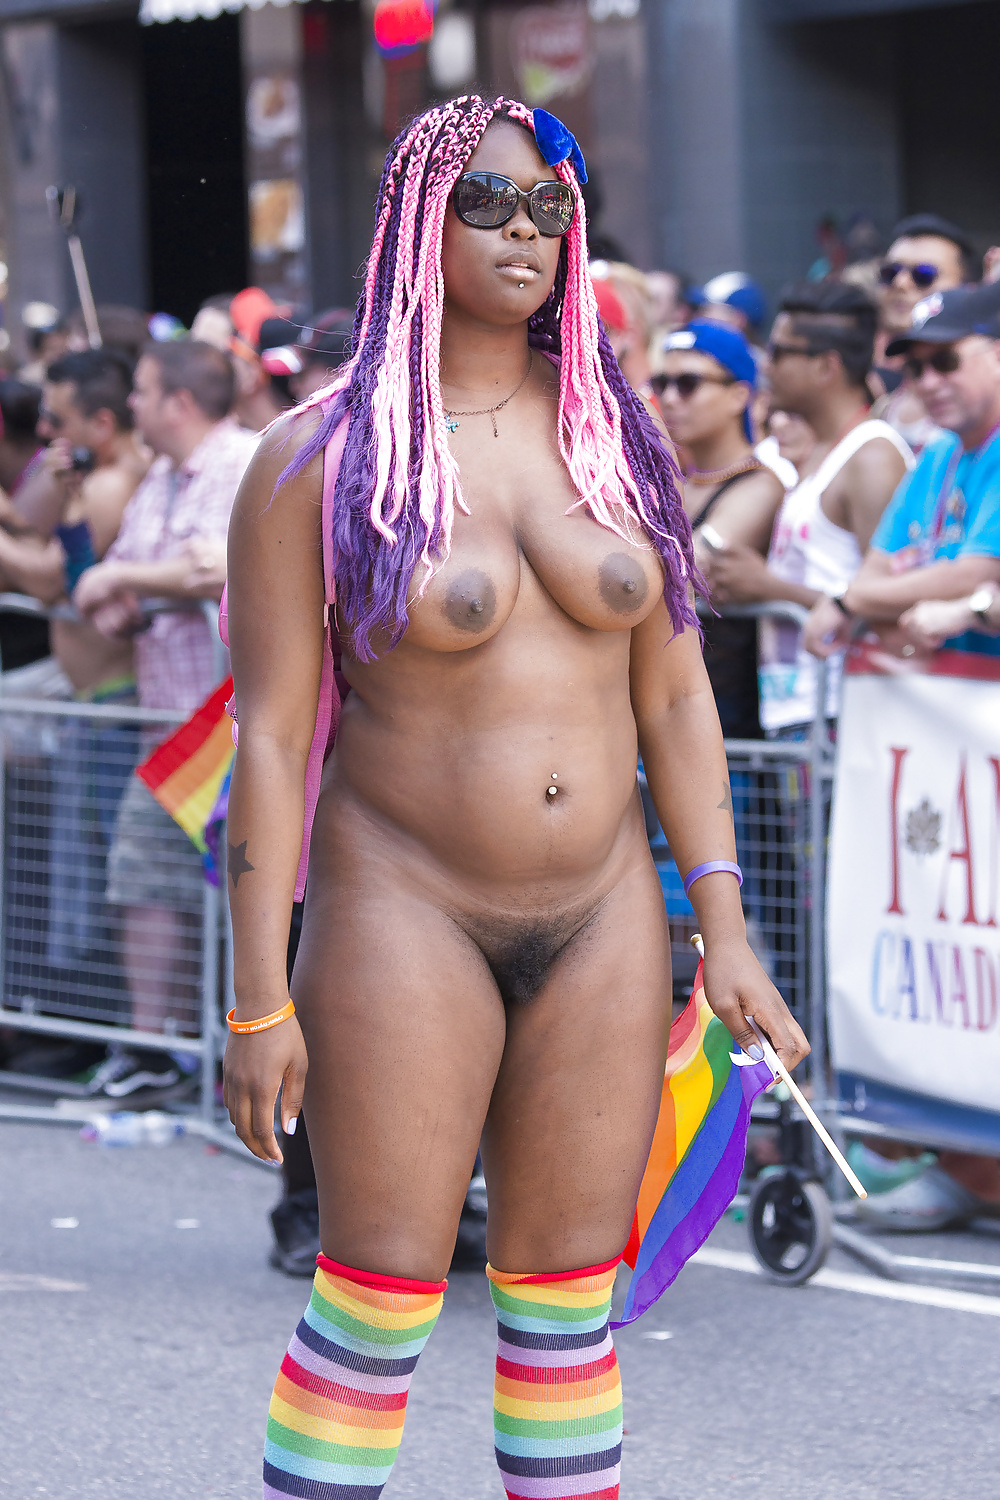 Ebony Woman Butt Naked in Public Parade - Photo #1.